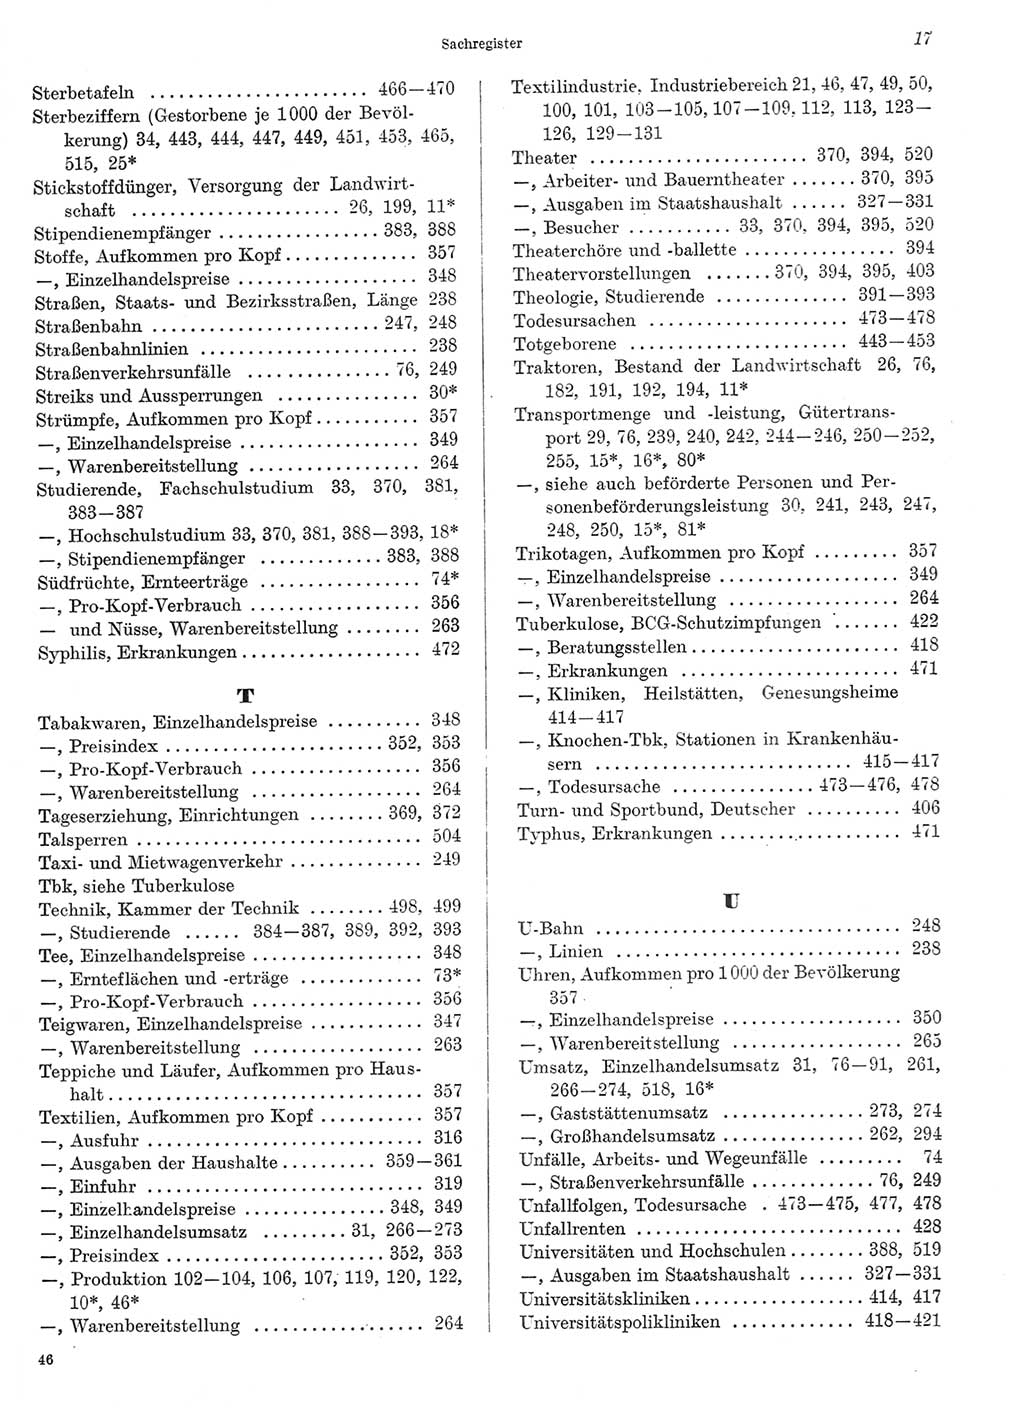 Statistisches Jahrbuch der Deutschen Demokratischen Republik (DDR) 1969, Seite 17 (Stat. Jb. DDR 1969, S. 17)